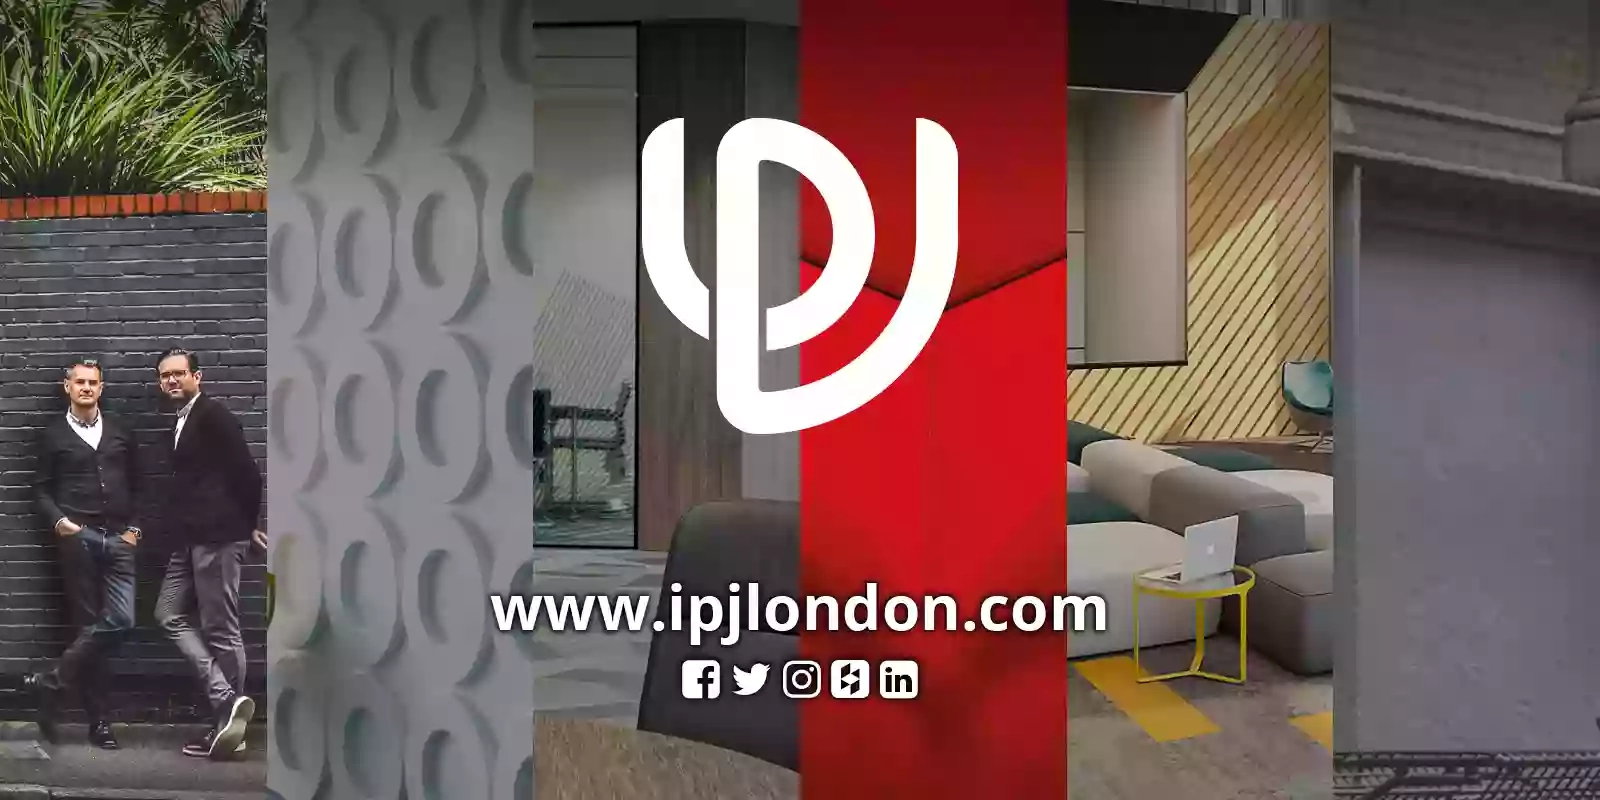 IPJ London